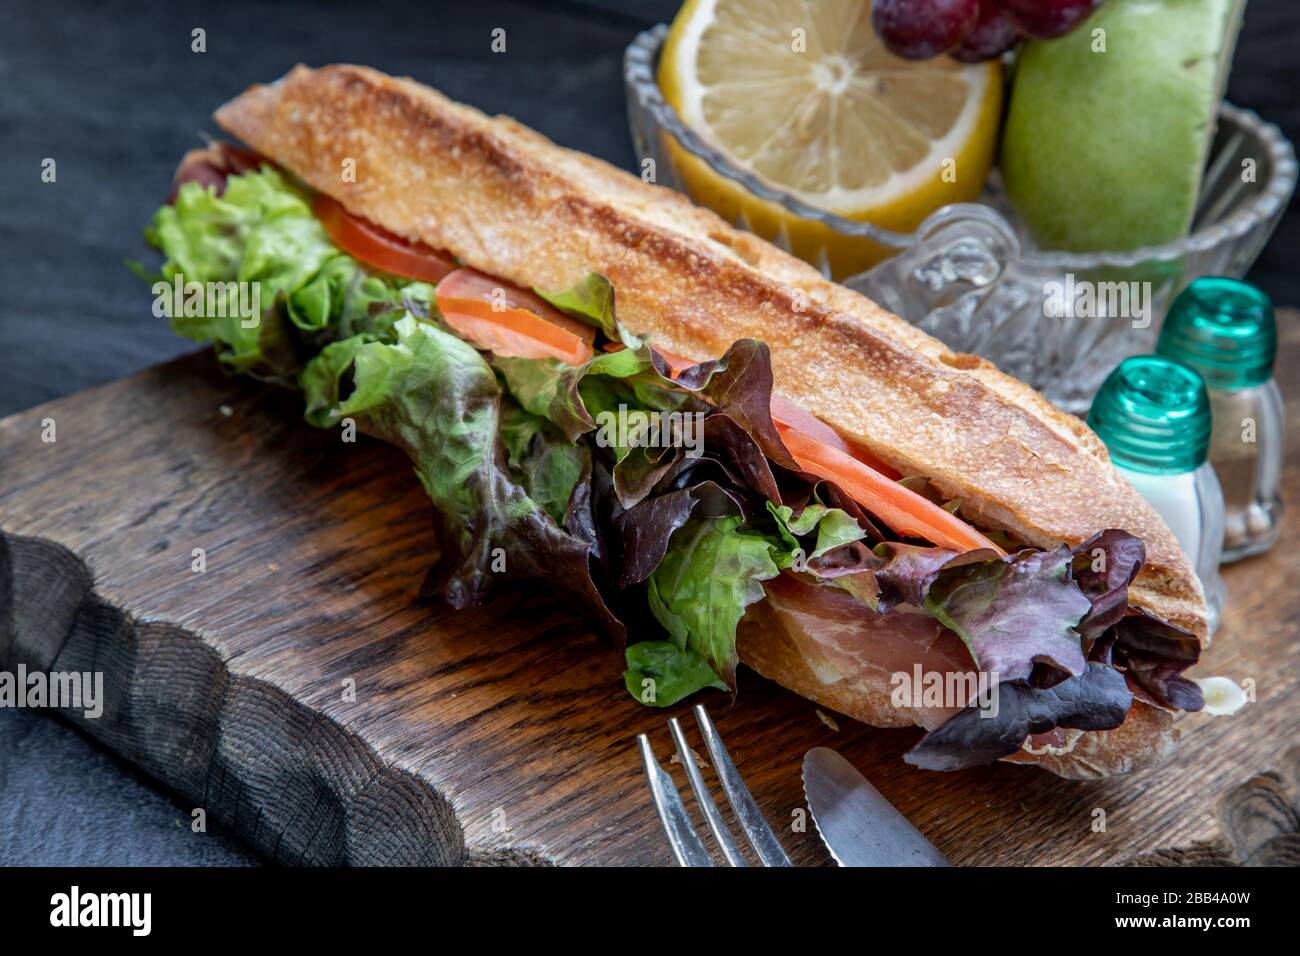 Ein köstliches Sesambrot Aus Geräuchertem Lachs auf einem Holzteller. Es ist perfekt mit Salaten und aromatisem Käse verzehrt. Gesundes Frühstück. Stockfoto